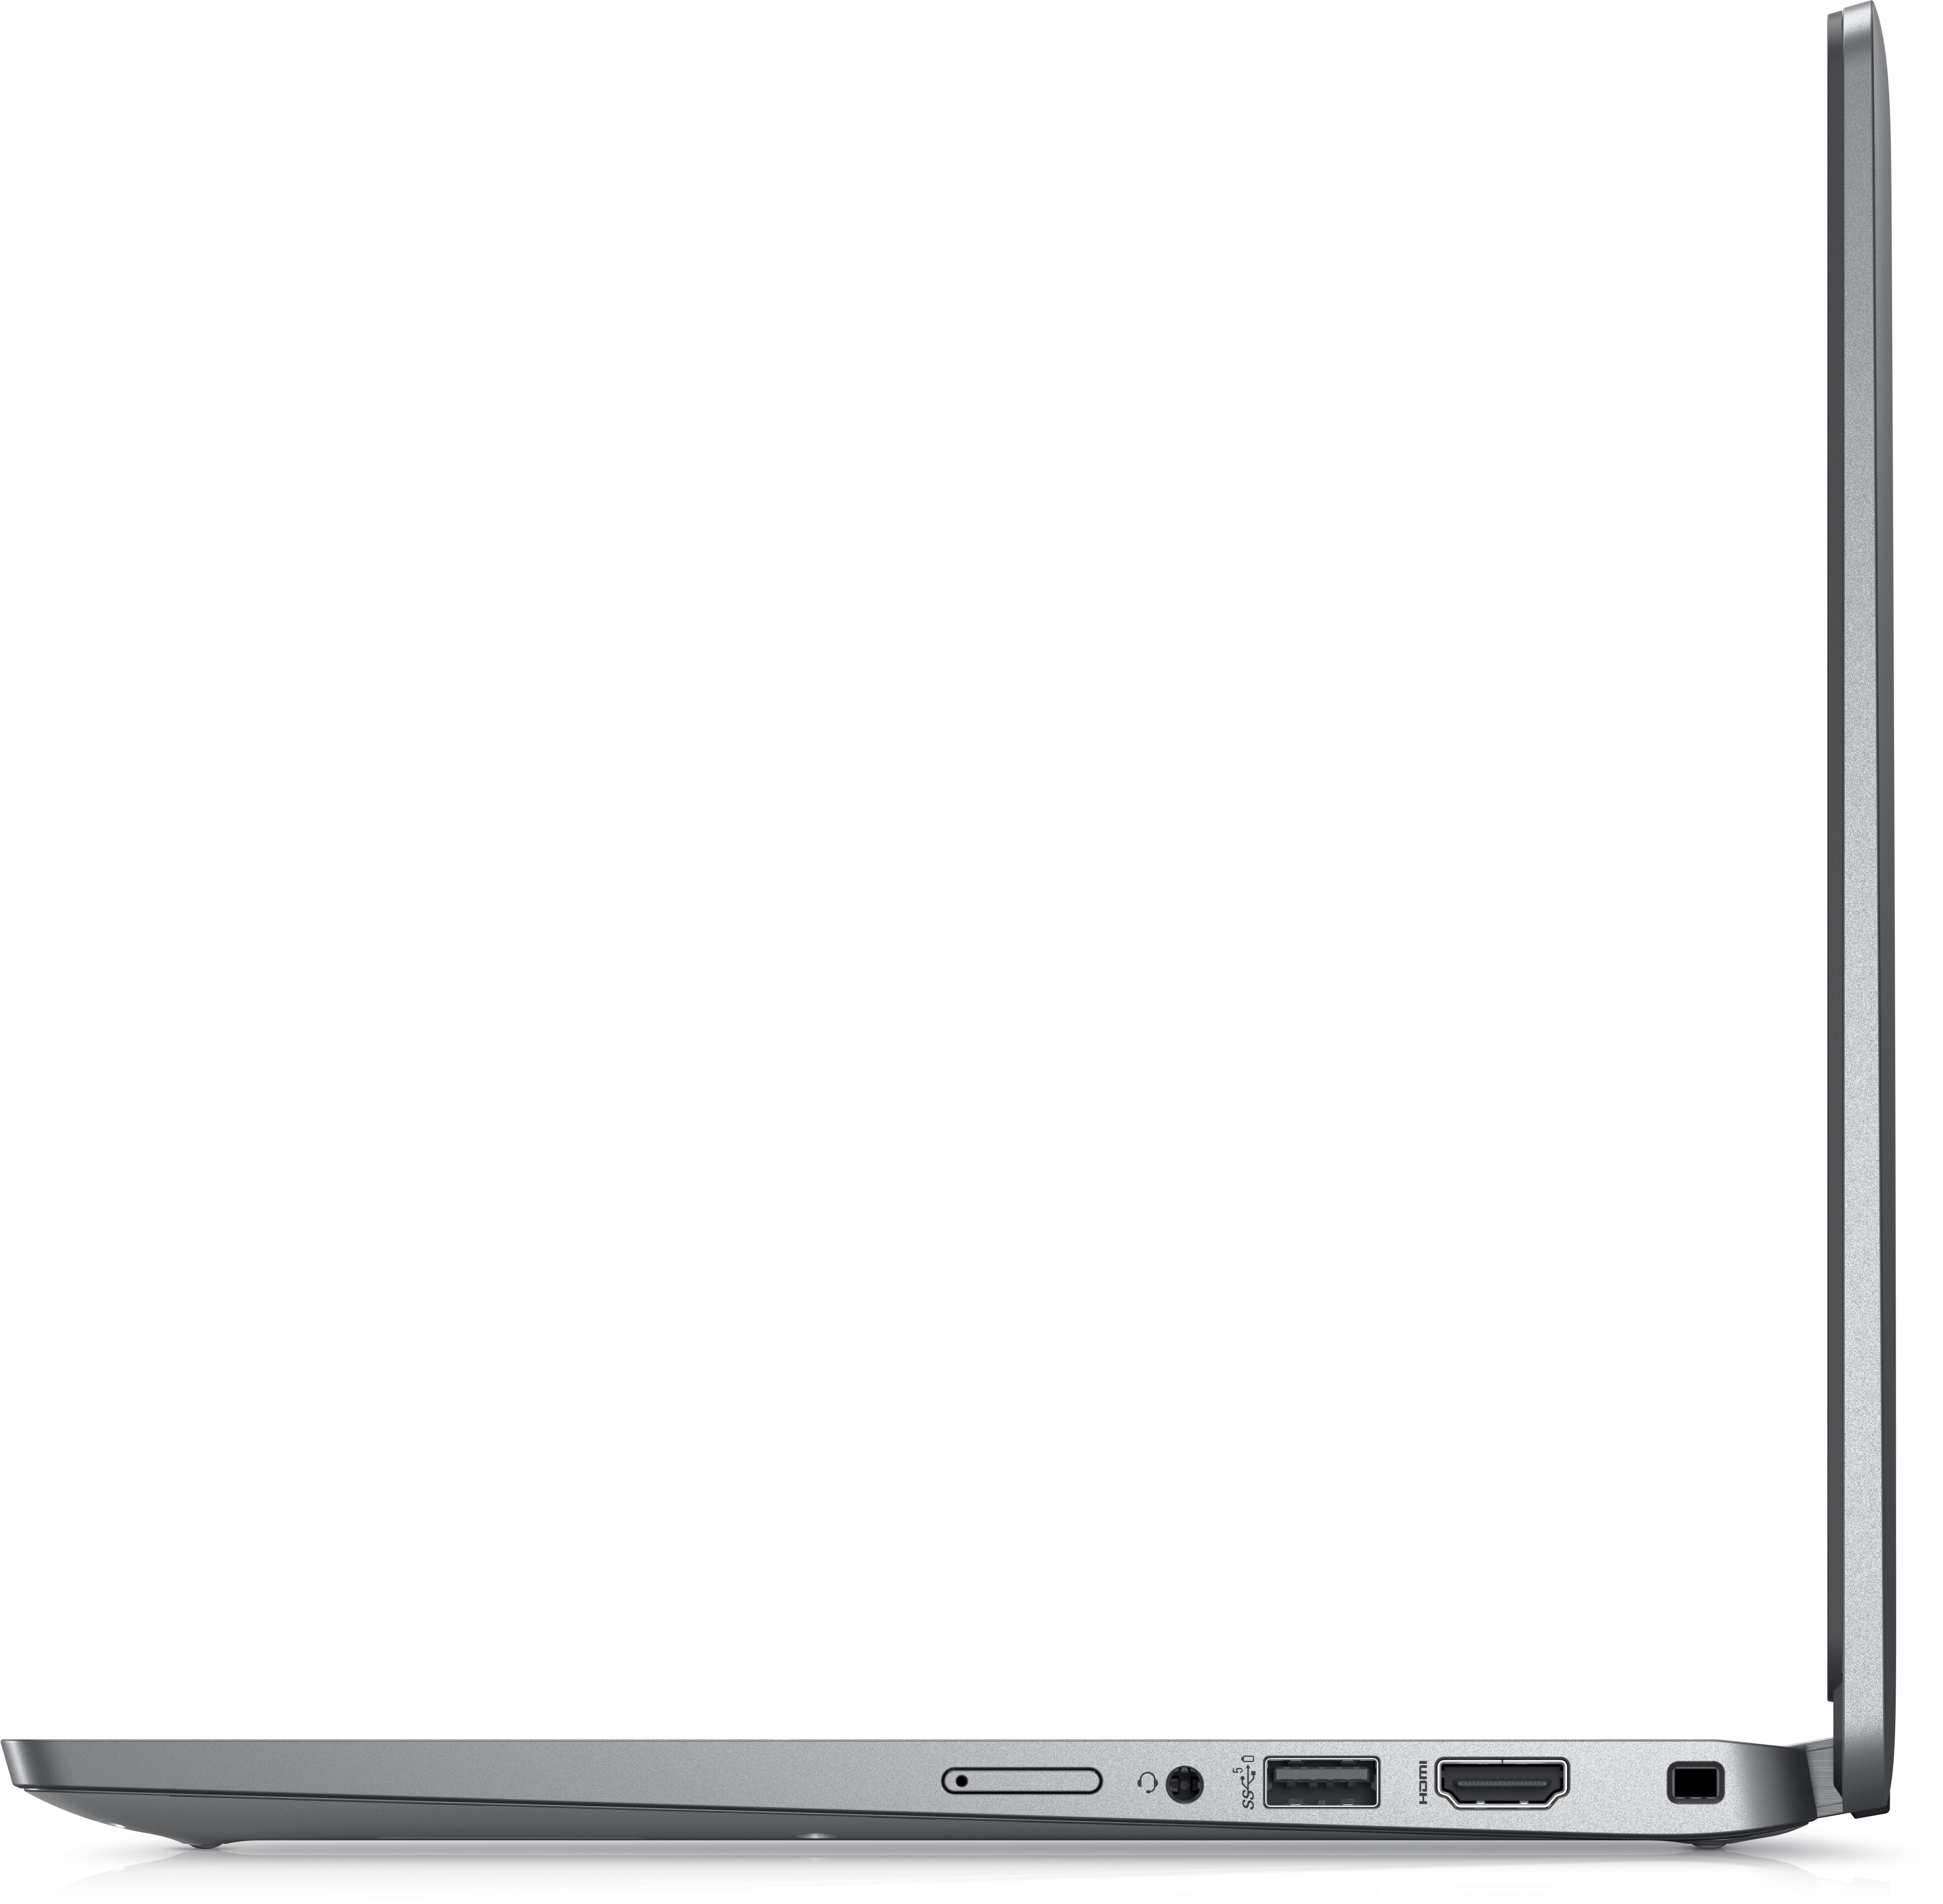 Dell Inspiron 5330: A Super Portable Intel Evo Laptop! 